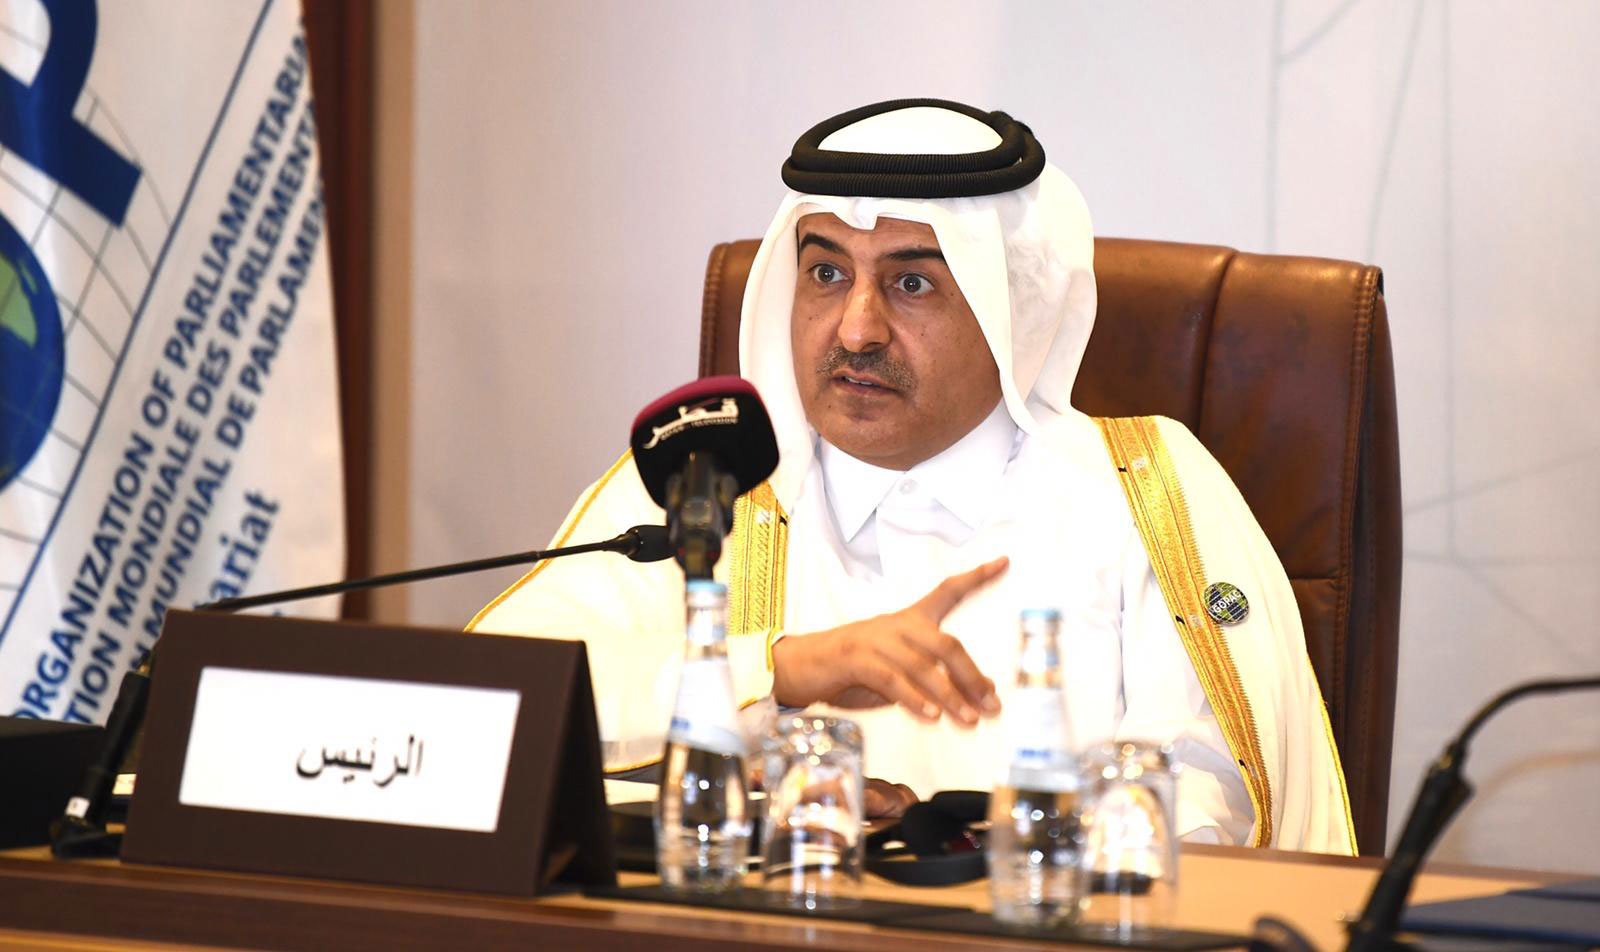 GOPAC elected H.E. Dr. Ali bin Fetais Al Marri as the new Chair of GOPAC during the 2021 AGM